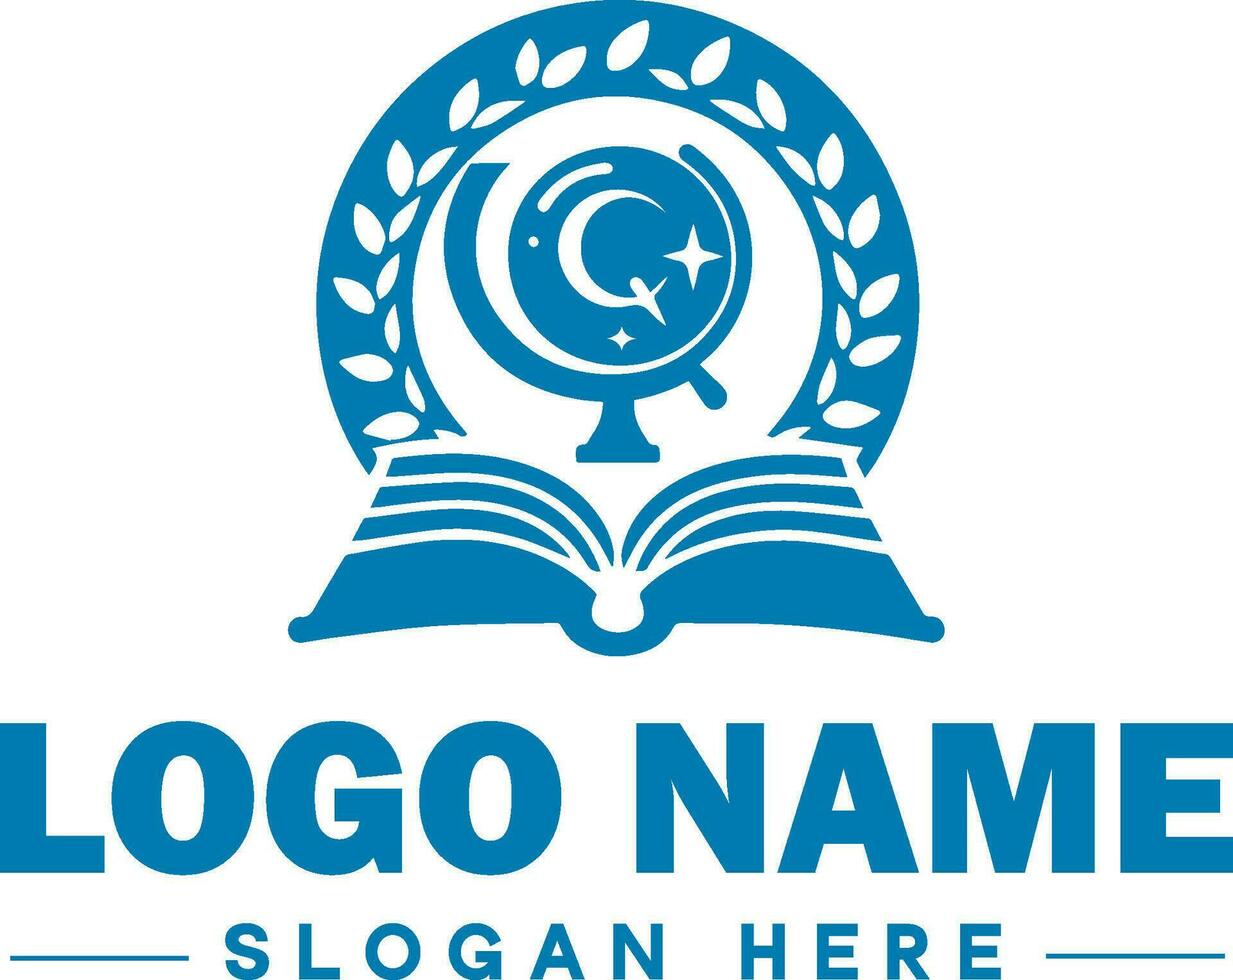 éducation logo pour école, collège, université, institut et icône symbole nettoyer plat moderne minimaliste logo conception modifiable vecteur